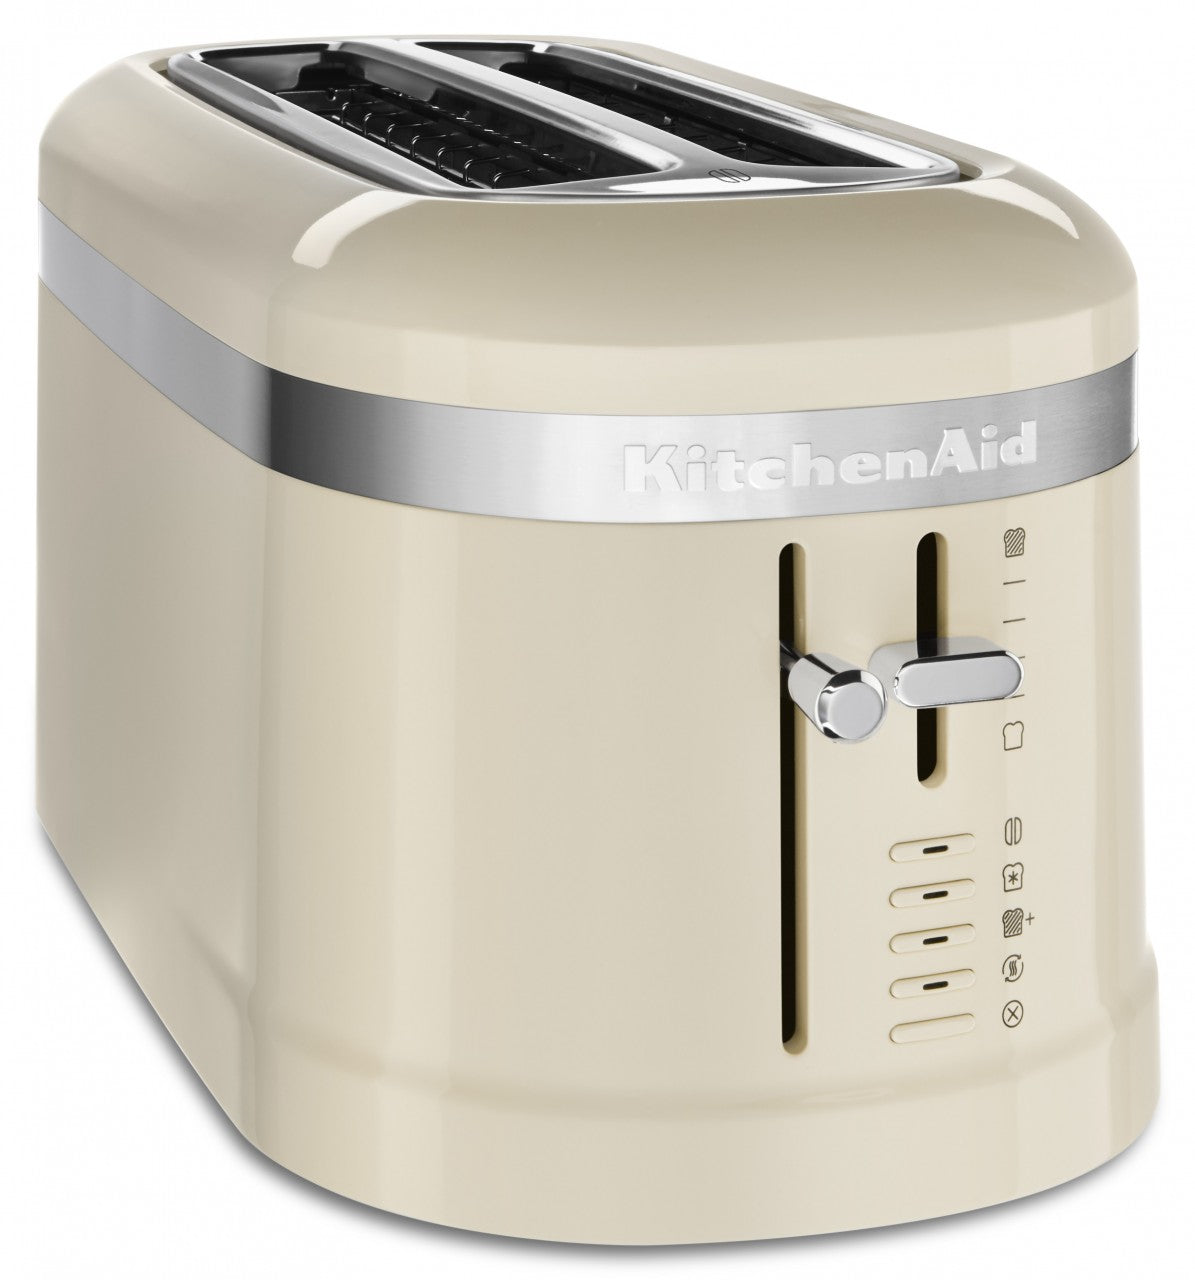 KitchenAid 5KMT5115 - 4-Scheiben Toaster